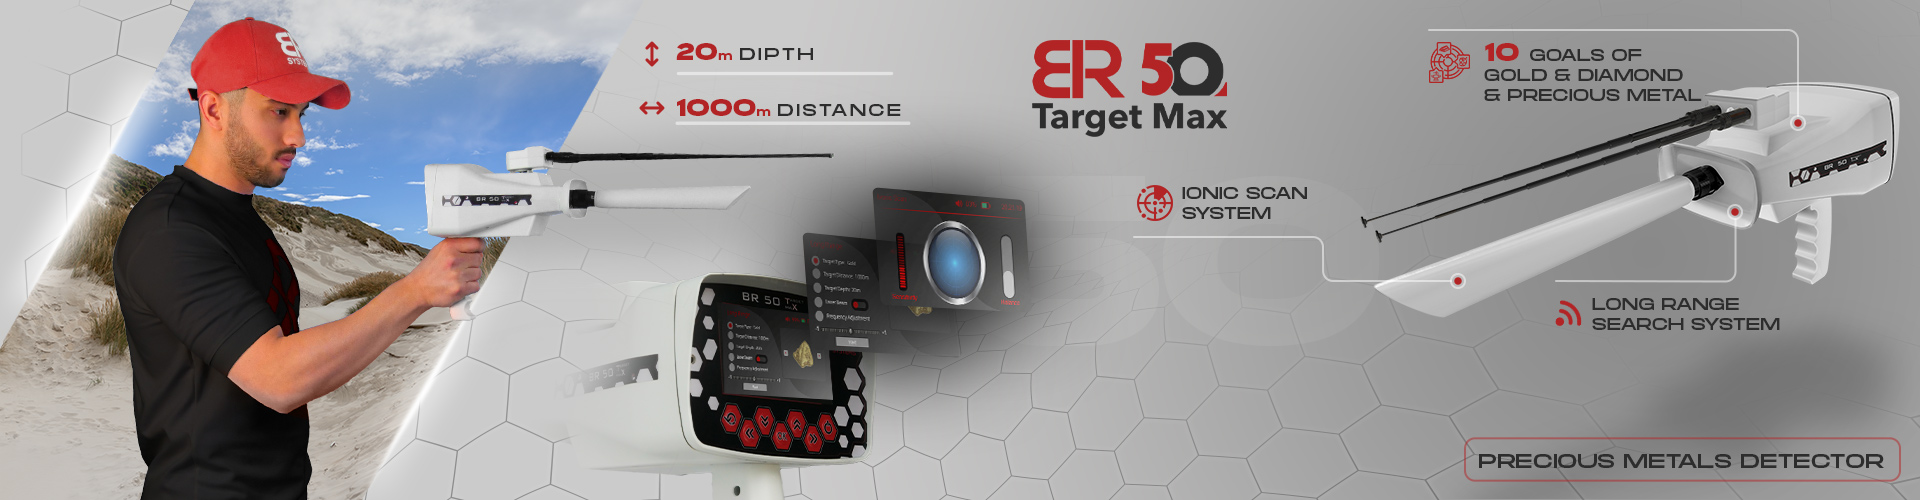 BR 50 Target Max - Detector de metales y oro